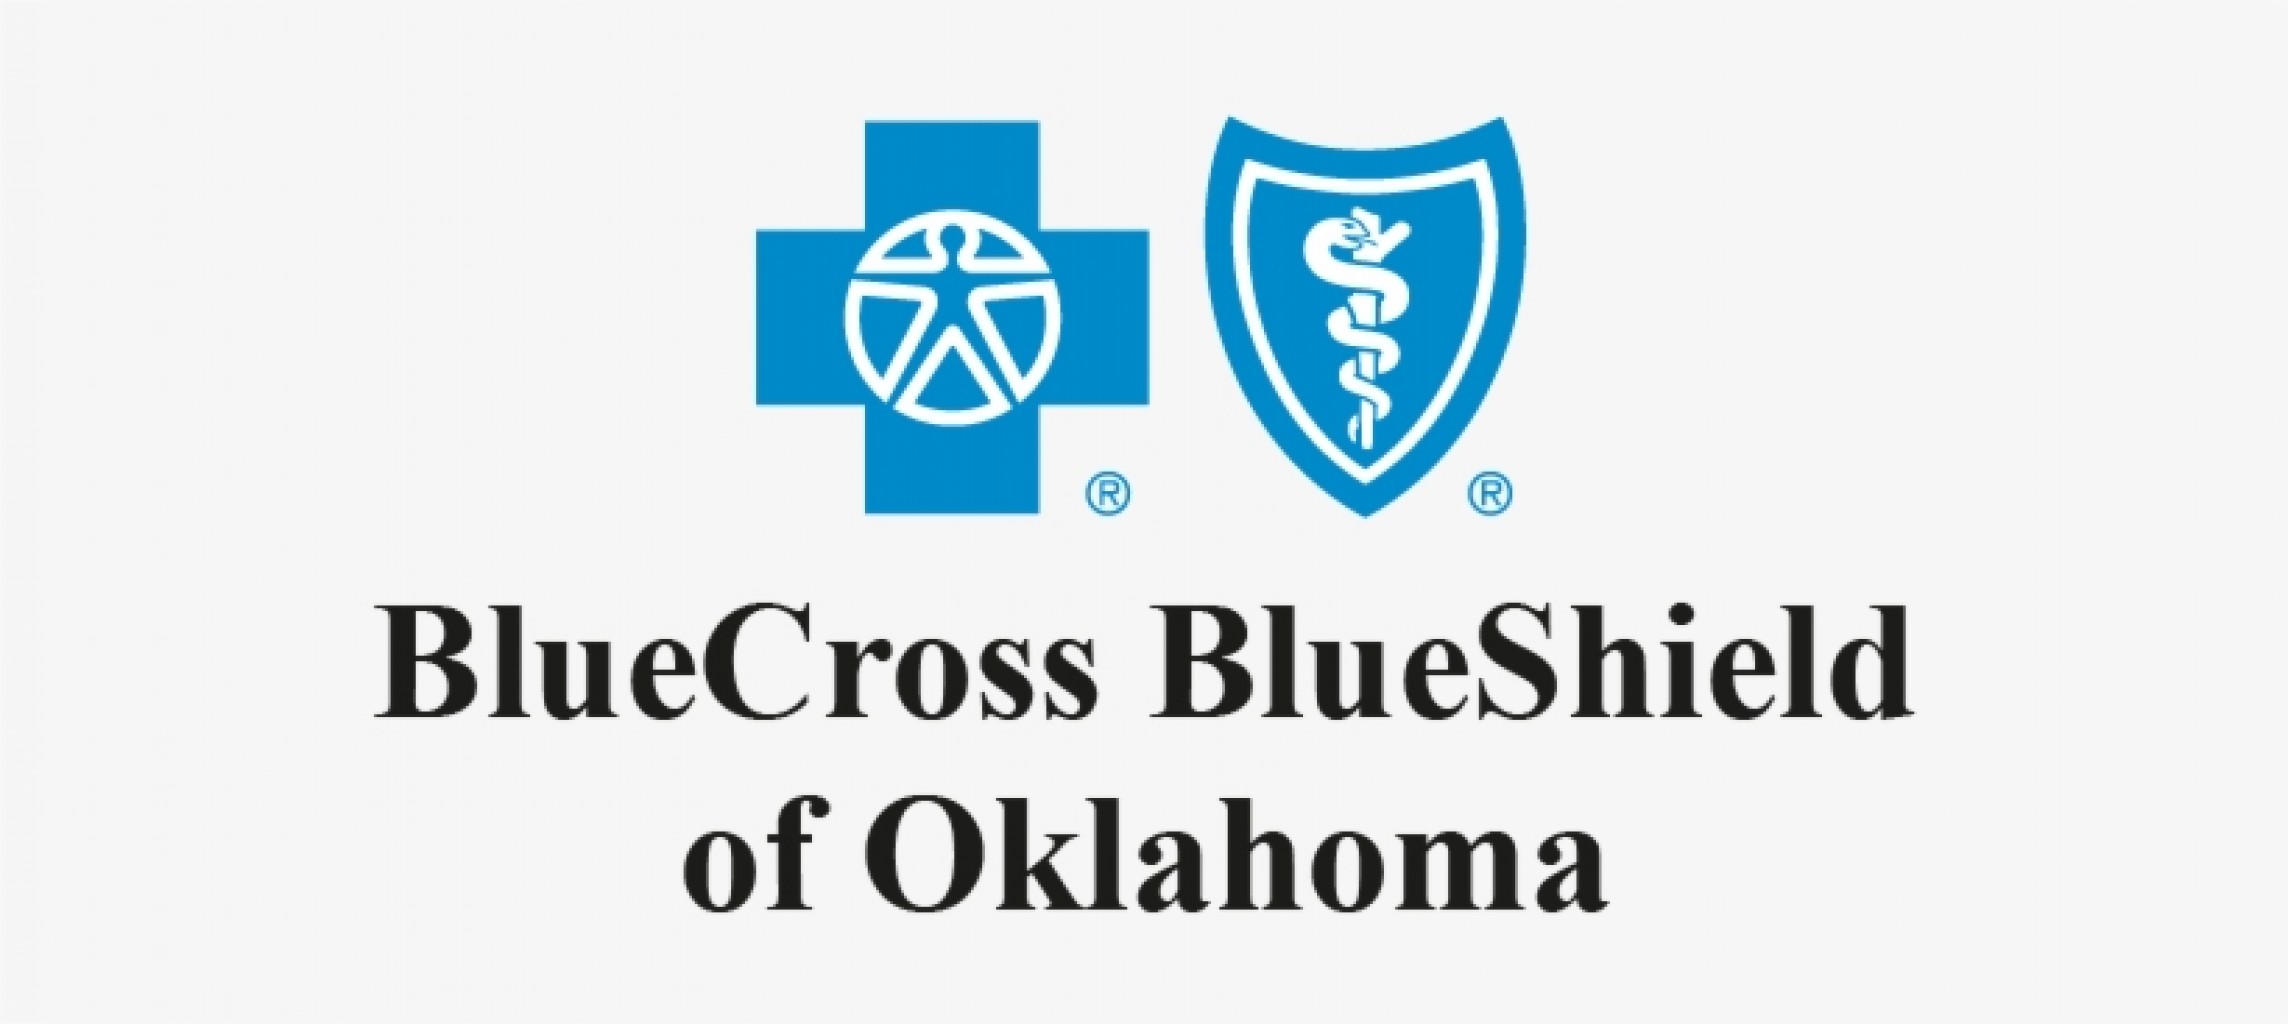 Asistencia disponible para los asegurados de Blue Cross and Blue Shield of Oklahoma  afectados por desastres naturales